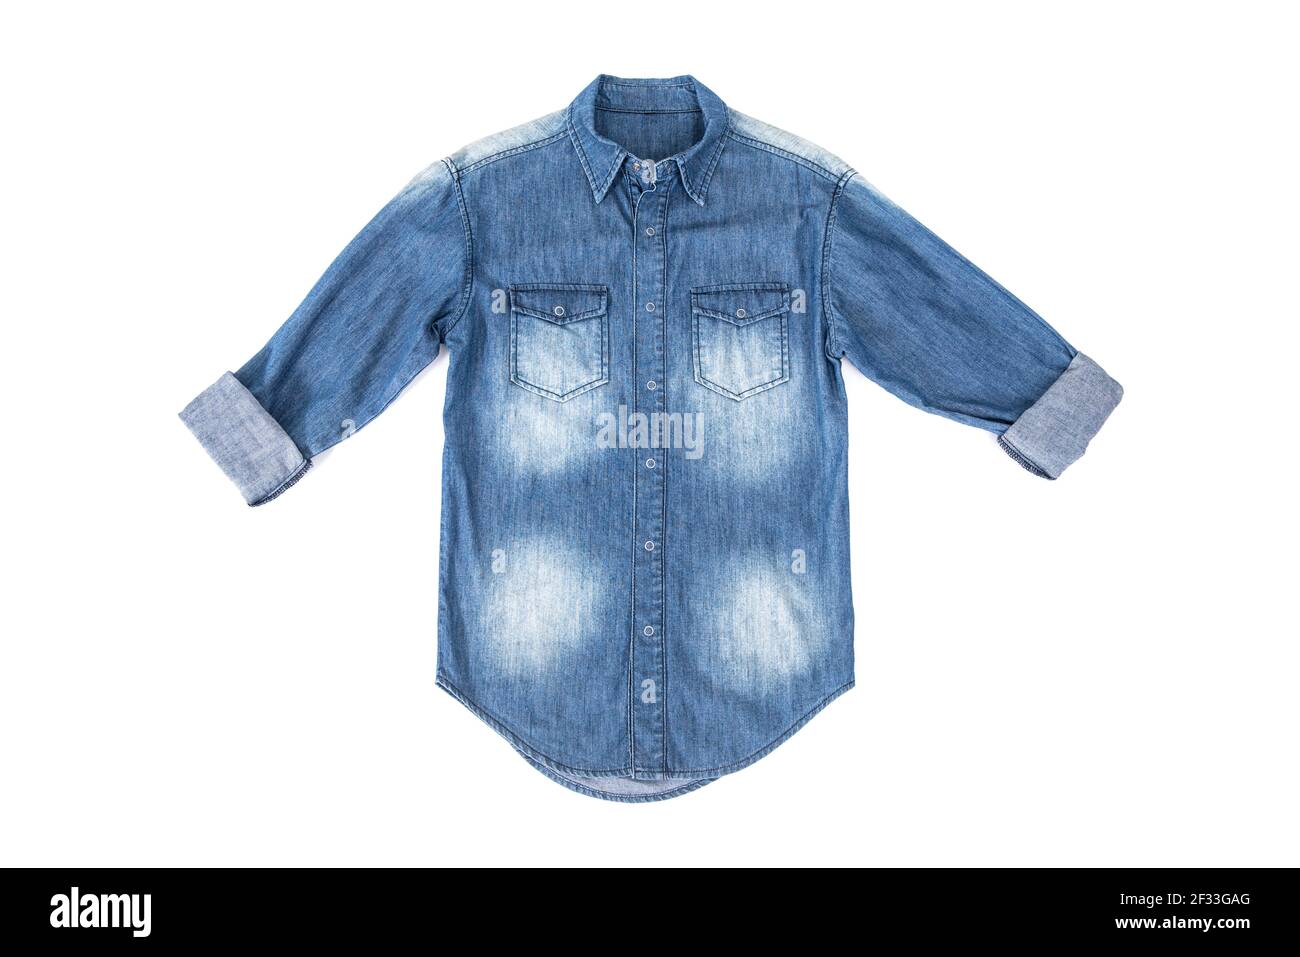 Chemise jean bleu à manches roulées - isolée sur fond blanc Banque D'Images